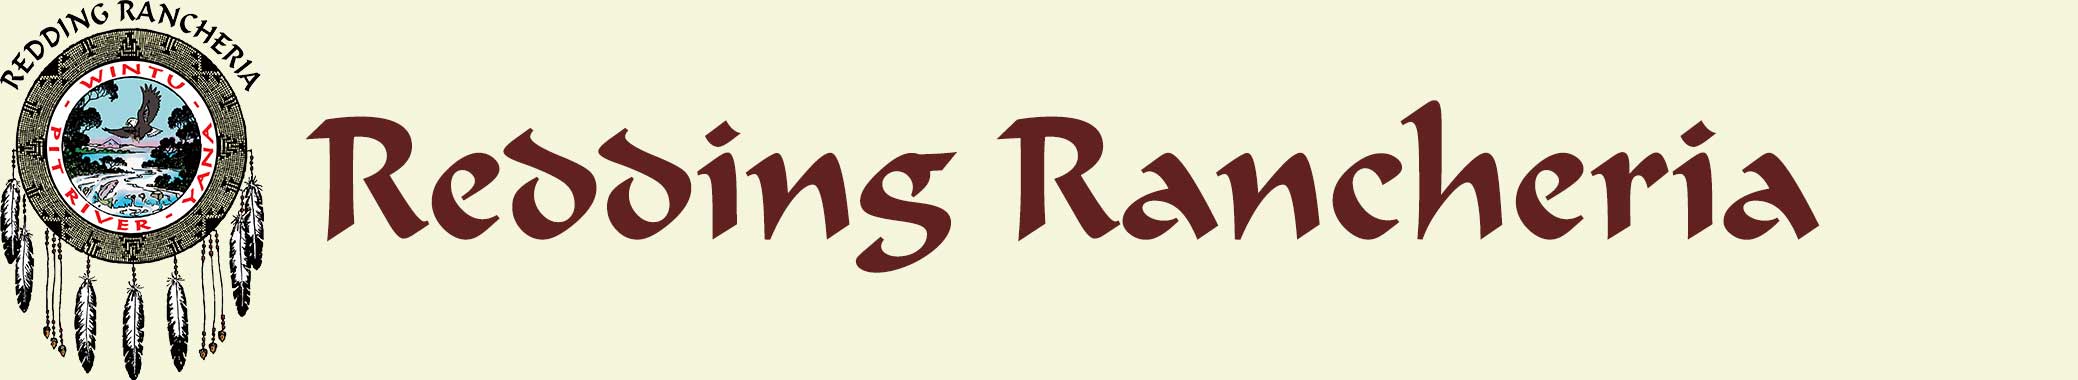 Redding Rancheria Logo